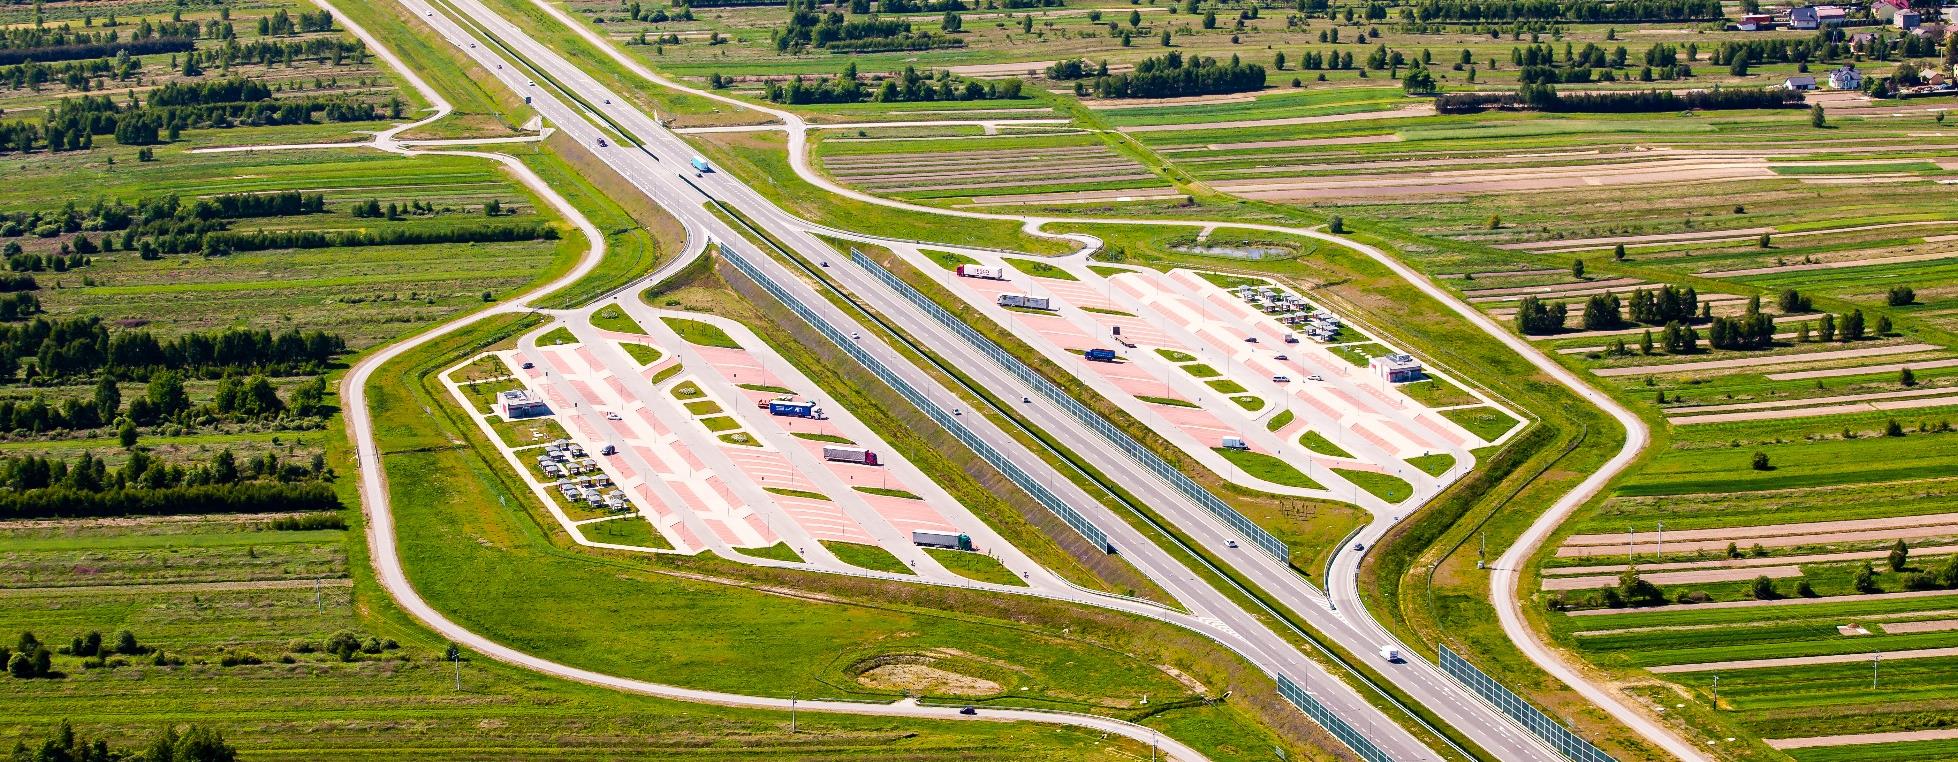 Budowa autostrady A-4 Tarnów Rzeszów wraz z drogą ekspresową S-19 Rzeszów Świlcza Długość: 82,8 km - zadanie podzielone na 5